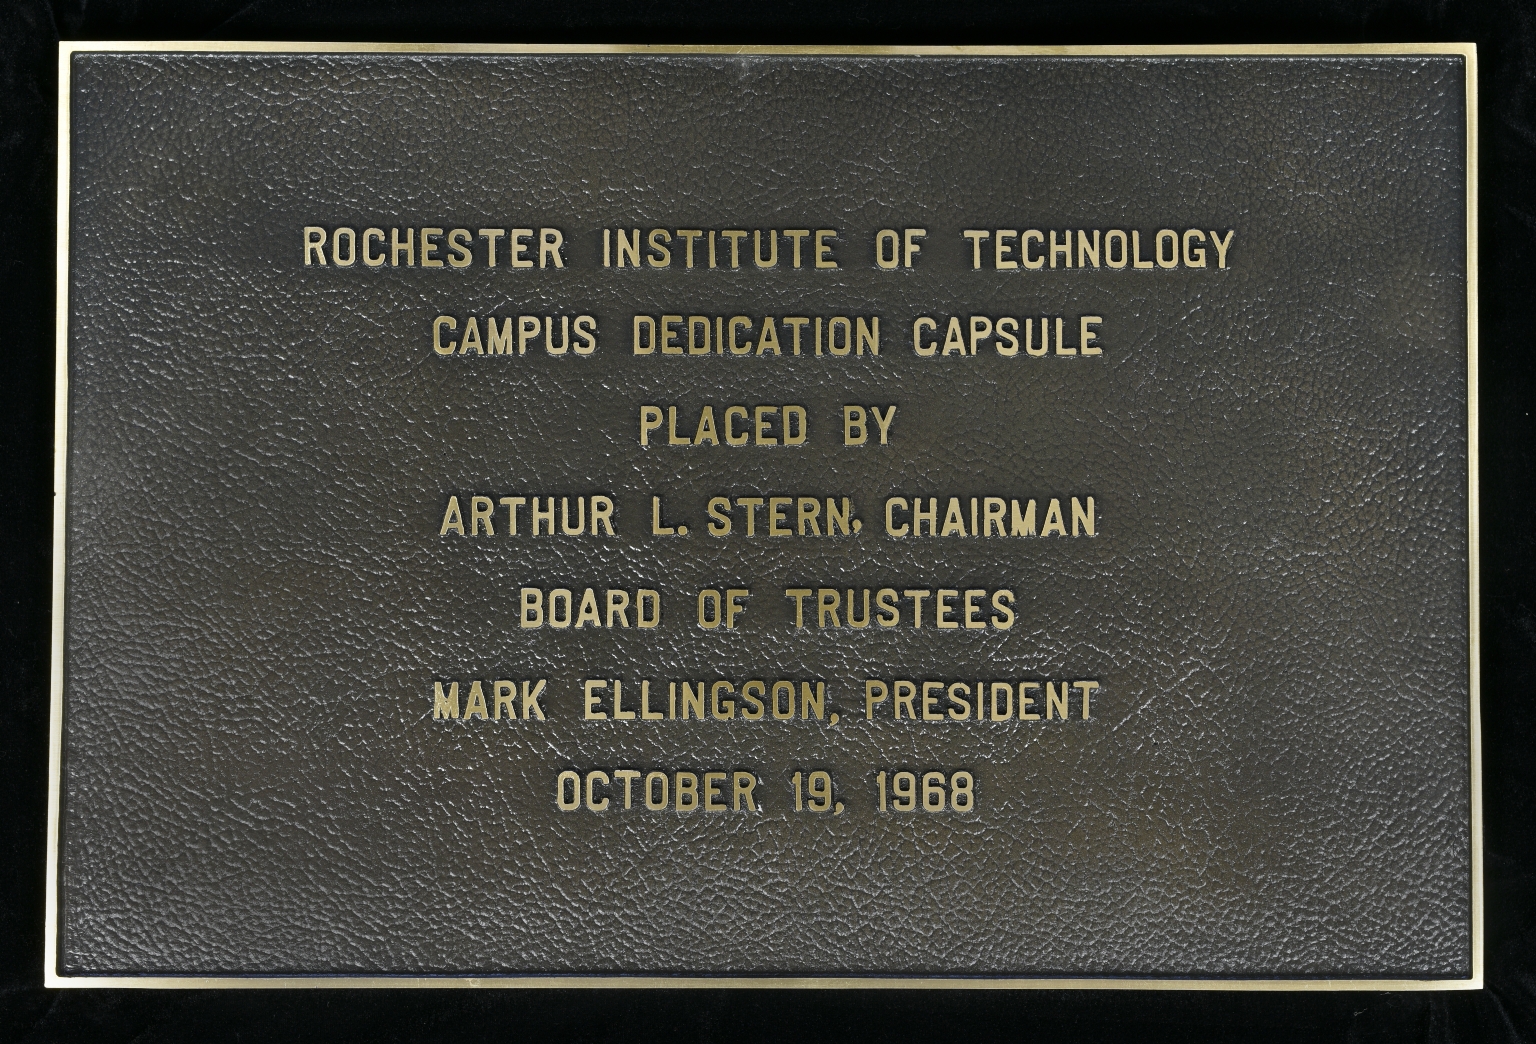 Campus dedication capsule plaque